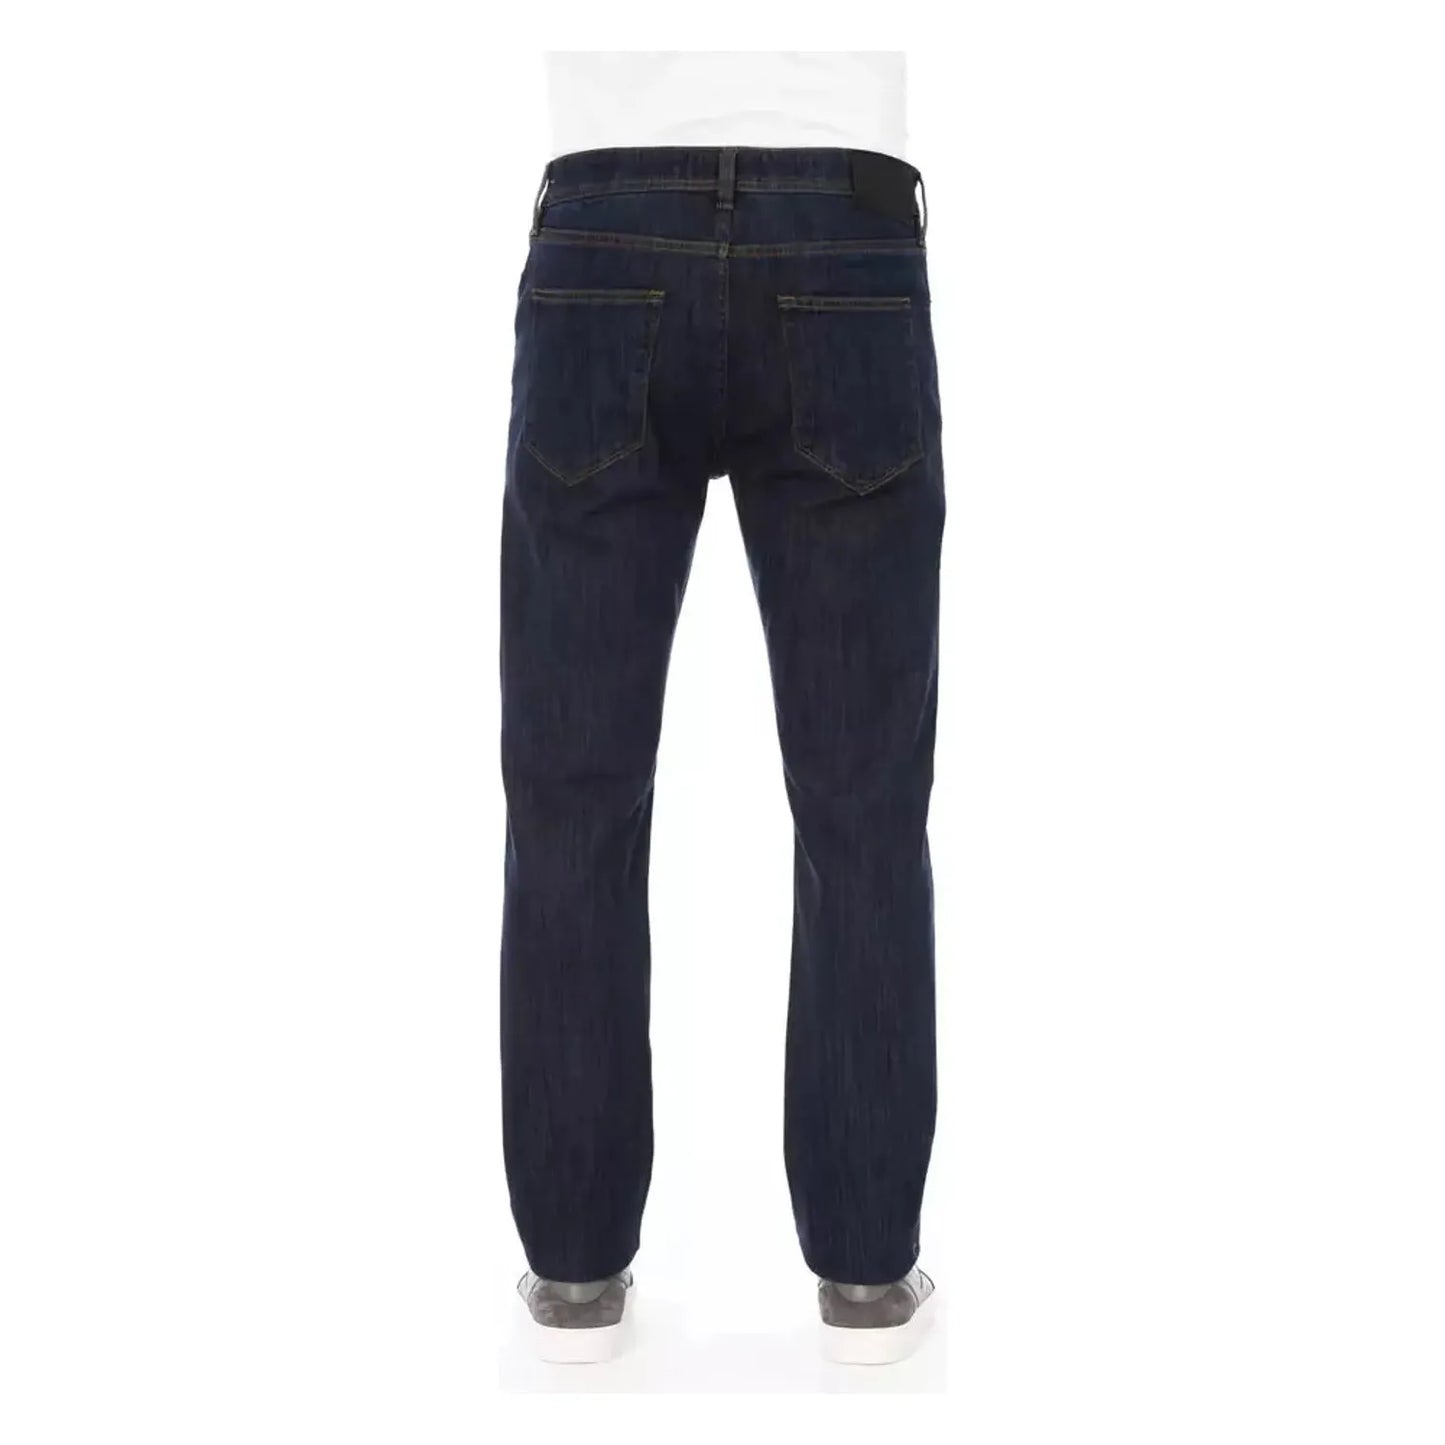 Baldinini Trend Chic Tricolor Insert Jeans for Men blue-cotton-jeans-pant-198